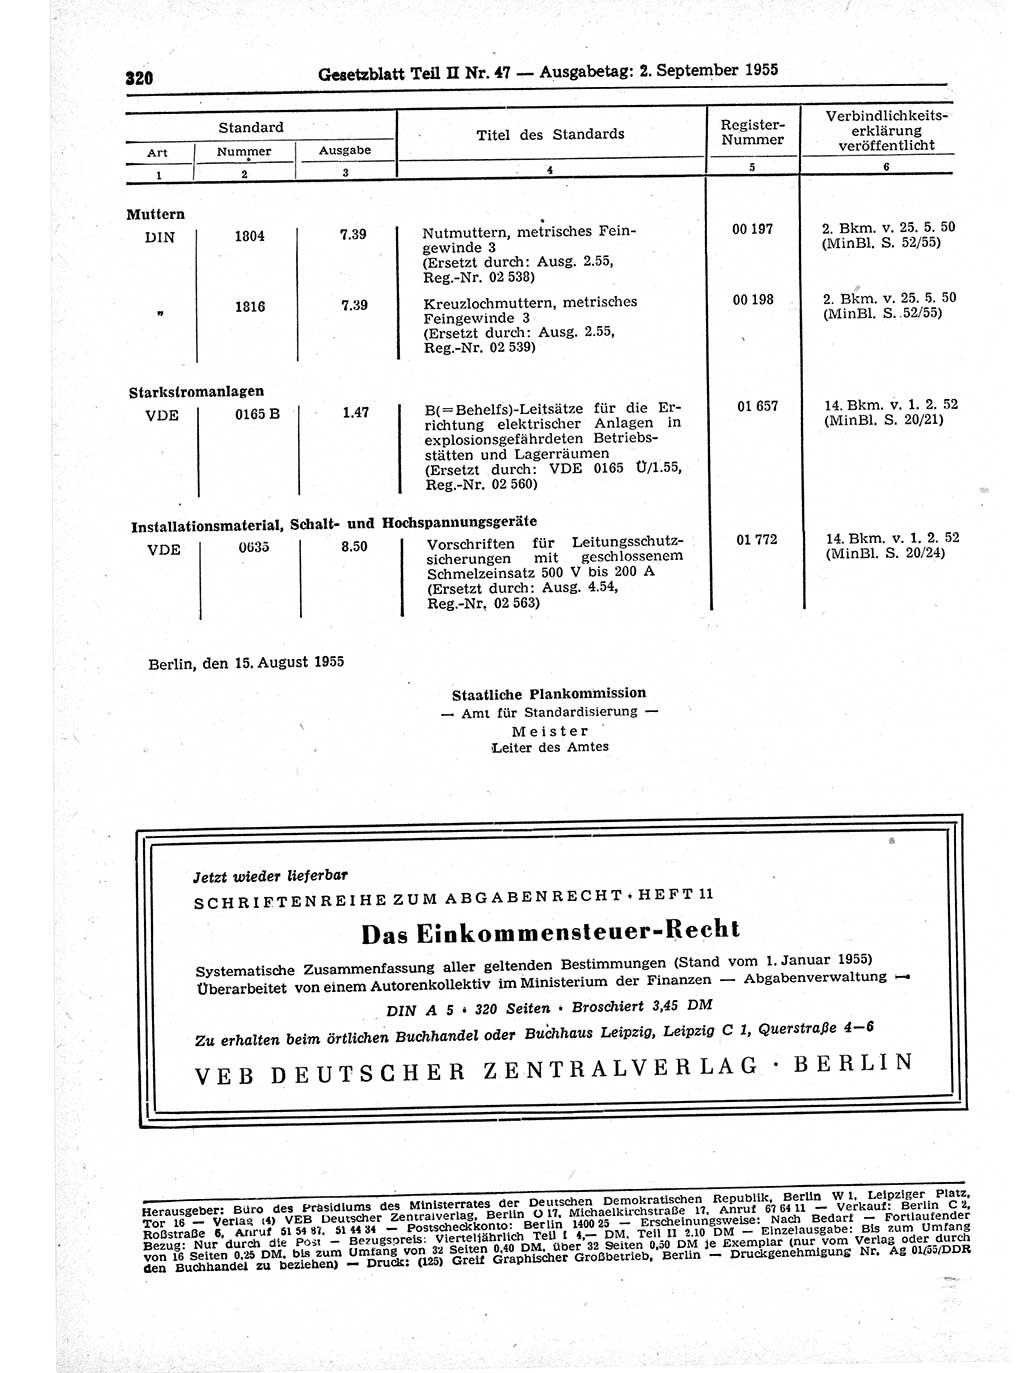 Gesetzblatt (GBl.) der Deutschen Demokratischen Republik (DDR) Teil ⅠⅠ 1955, Seite 320 (GBl. DDR ⅠⅠ 1955, S. 320)